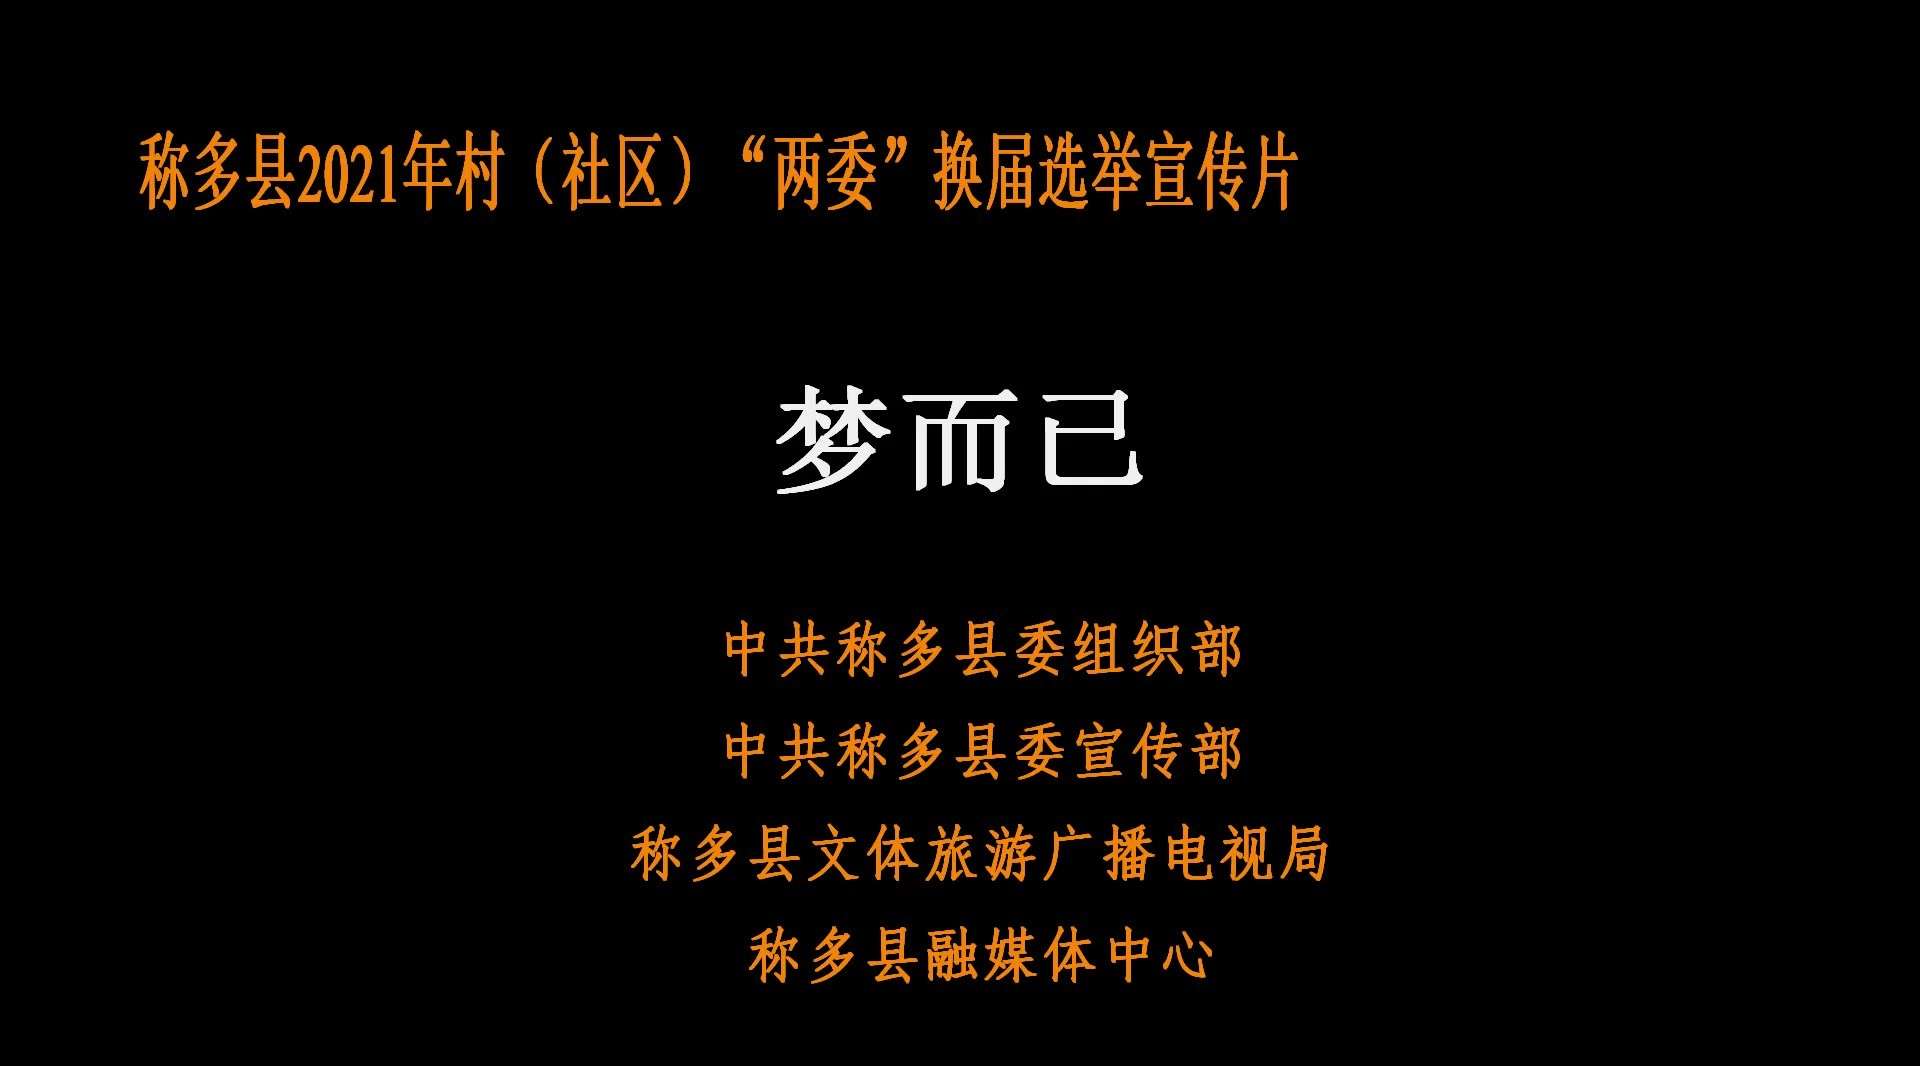 称多县2021年村（社区）“两委”换届选举宣传片《梦而已》